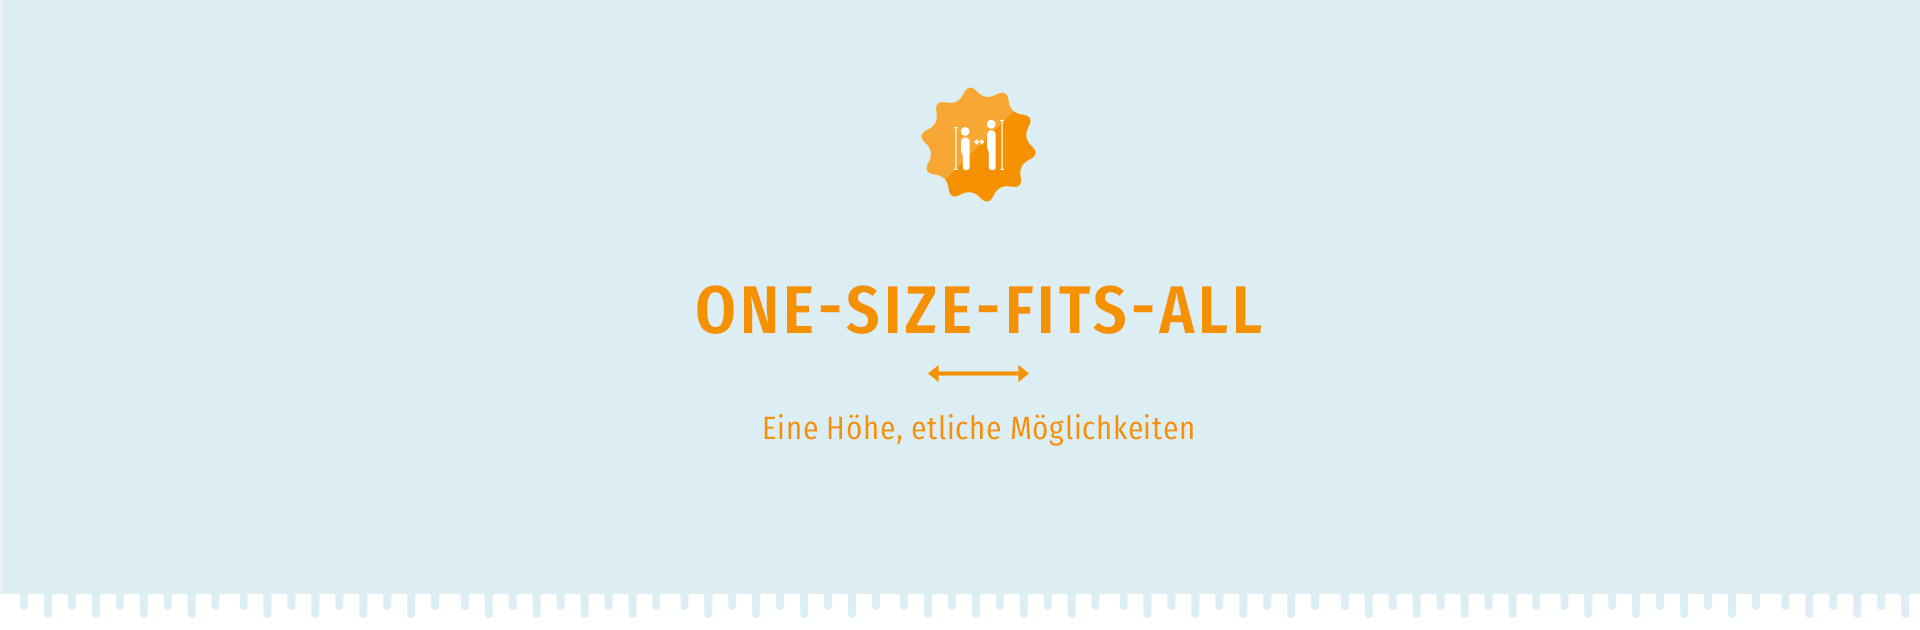 One-Size-Fits-All von PROPHETE